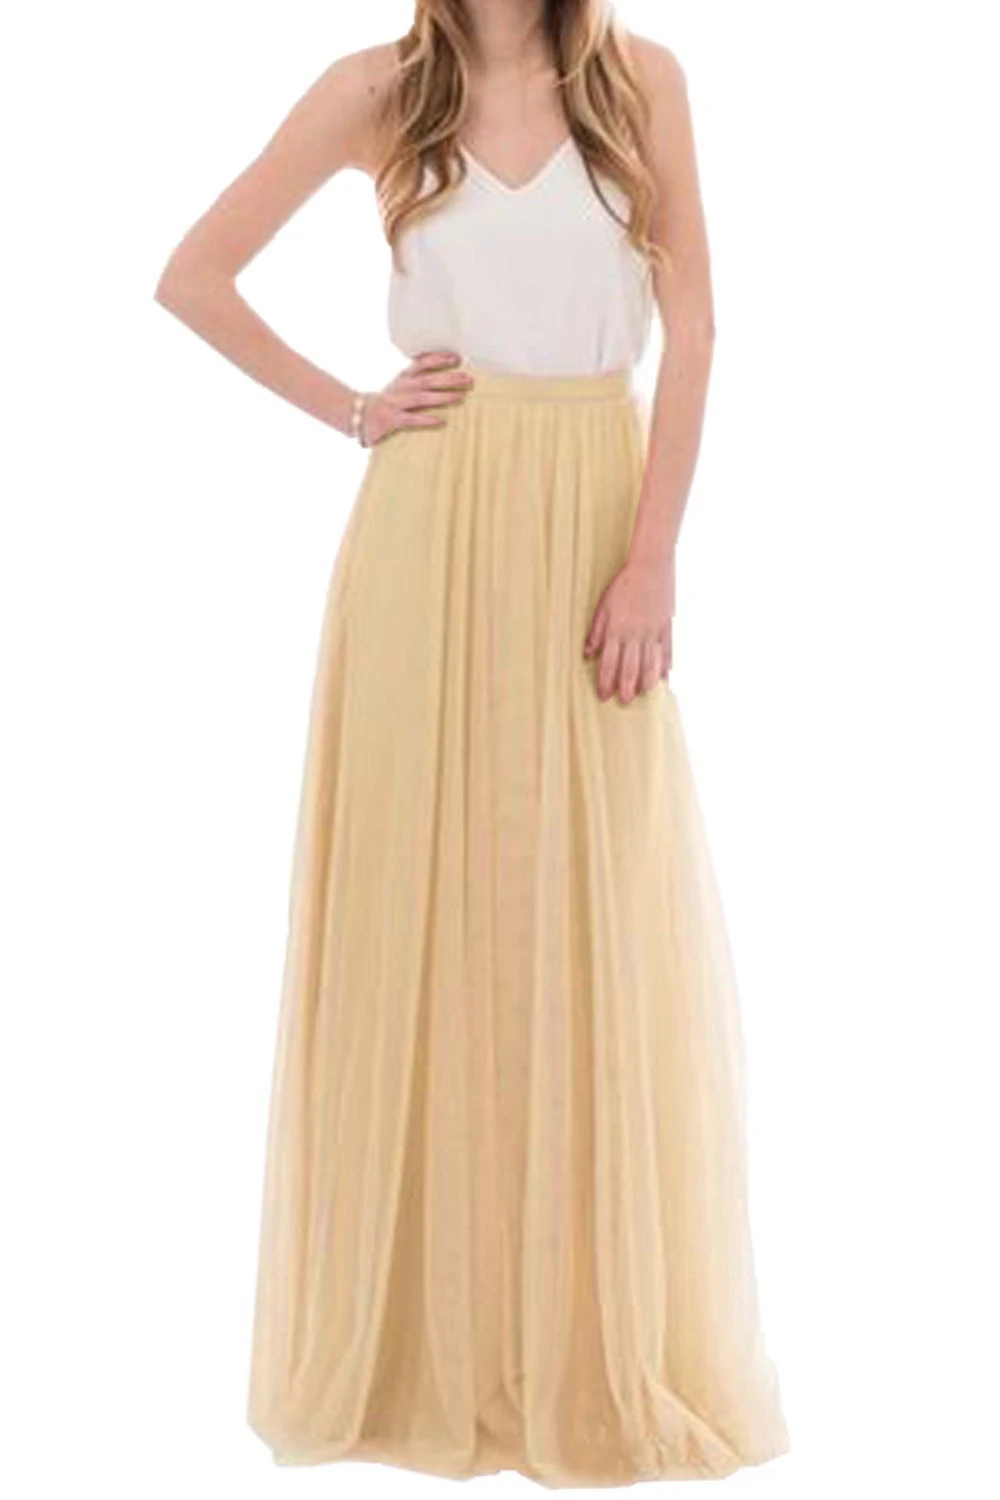 Женская летняя фатиновая юбка, длинная юбка подружки невесты, румяные юбки для выпускного вечера/юбка макси для подружки невесты, вечерние платья Vestidos - Цвет: 747-Yellow  Champagn